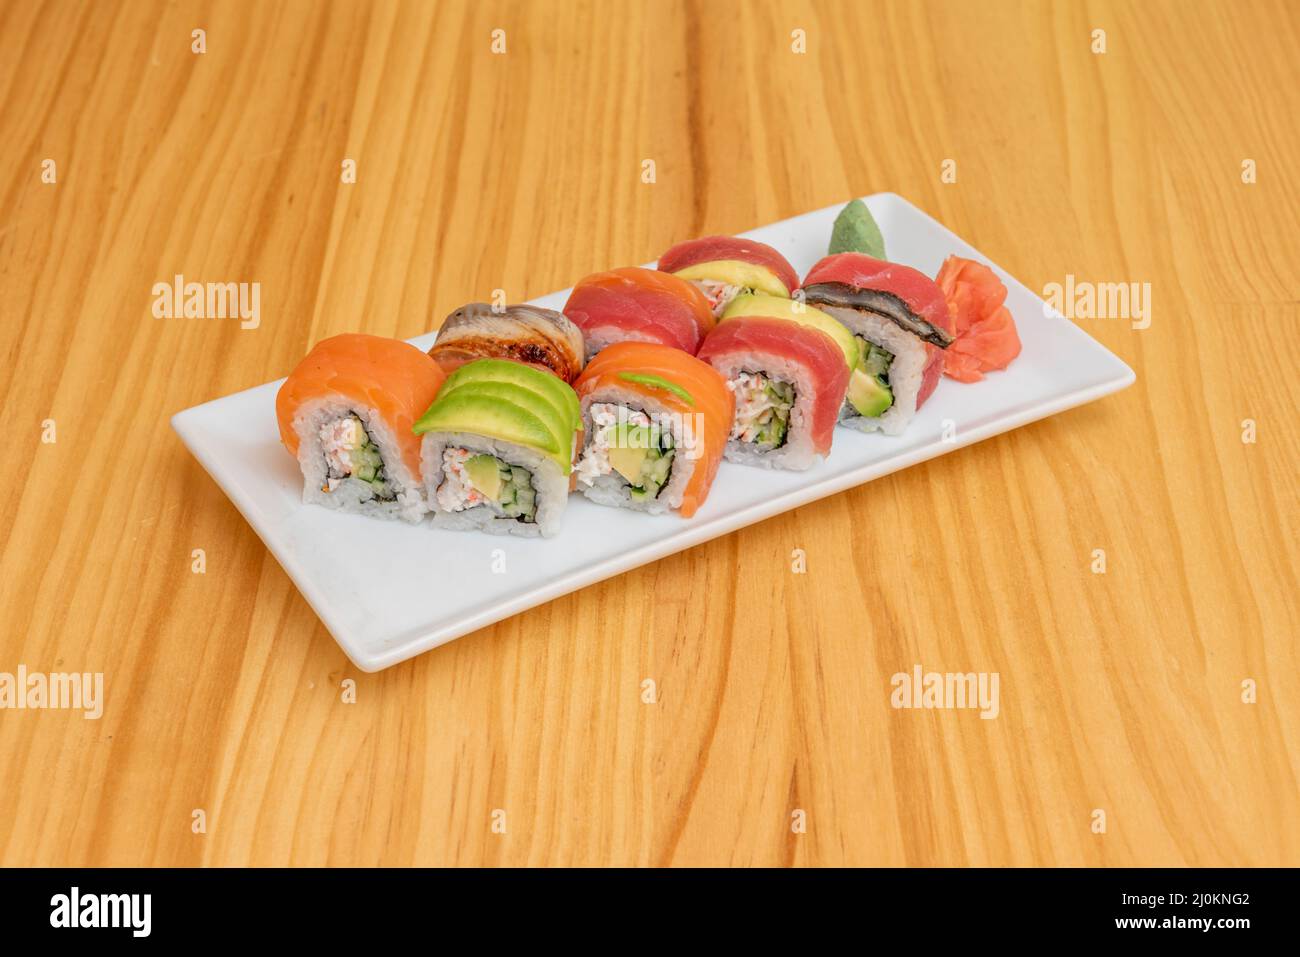 Le rouleau Rainbow est un rouleau de sushi uramaki farci de concombre, d'avocat et de bâtonnets de crabe. Il est préparé avec différents types de poissons, le plus souvent le thon, le salm Banque D'Images